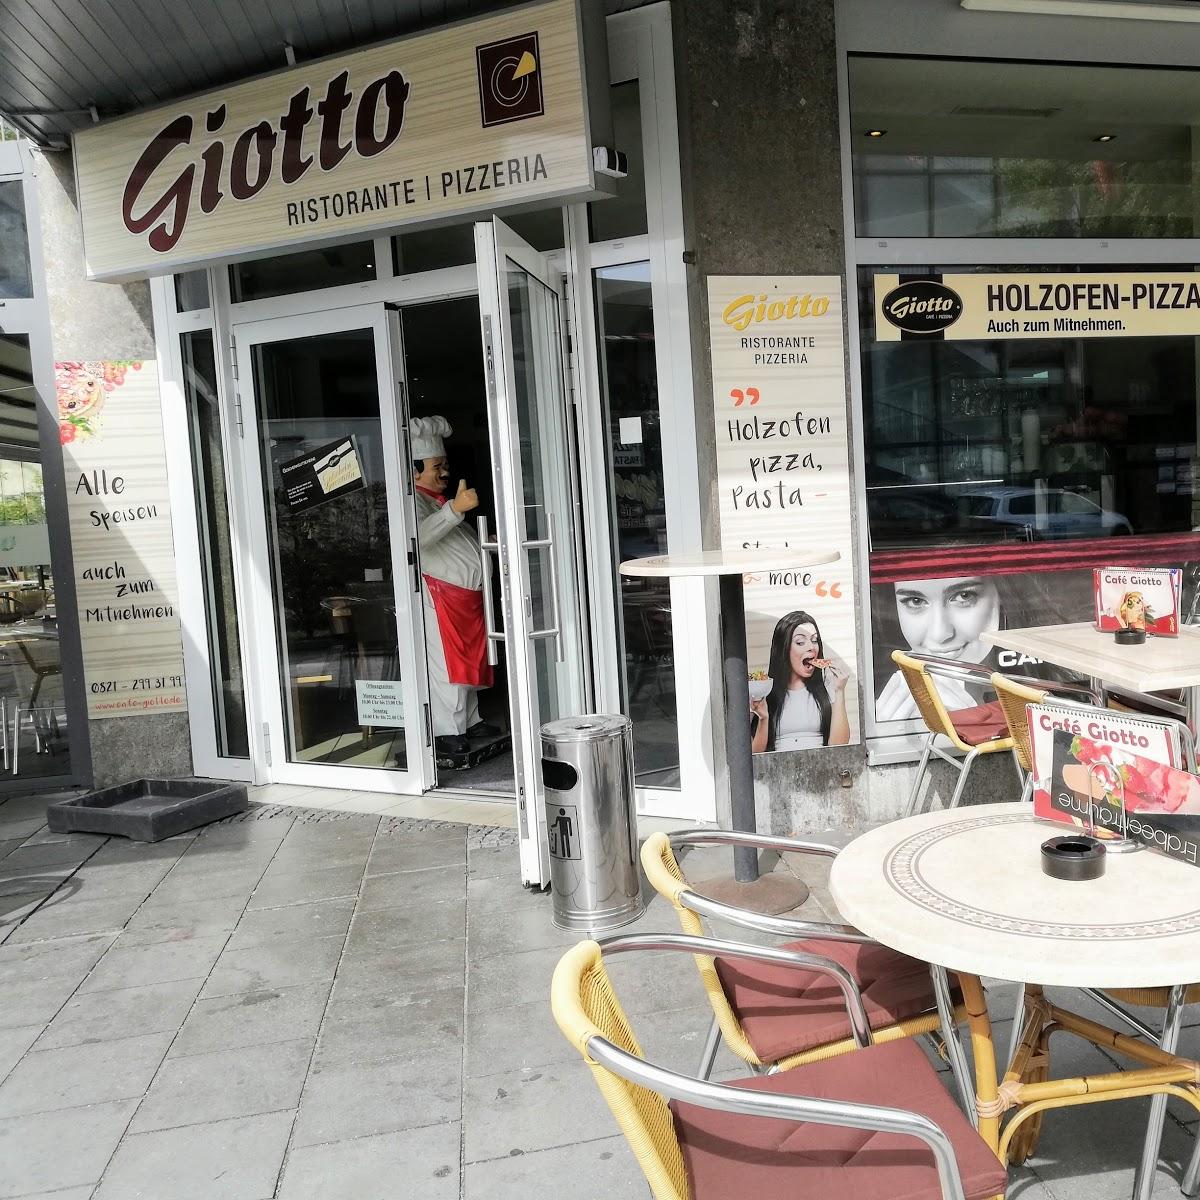 Restaurant "Cafe Giotto Gelateria" in Gersthofen